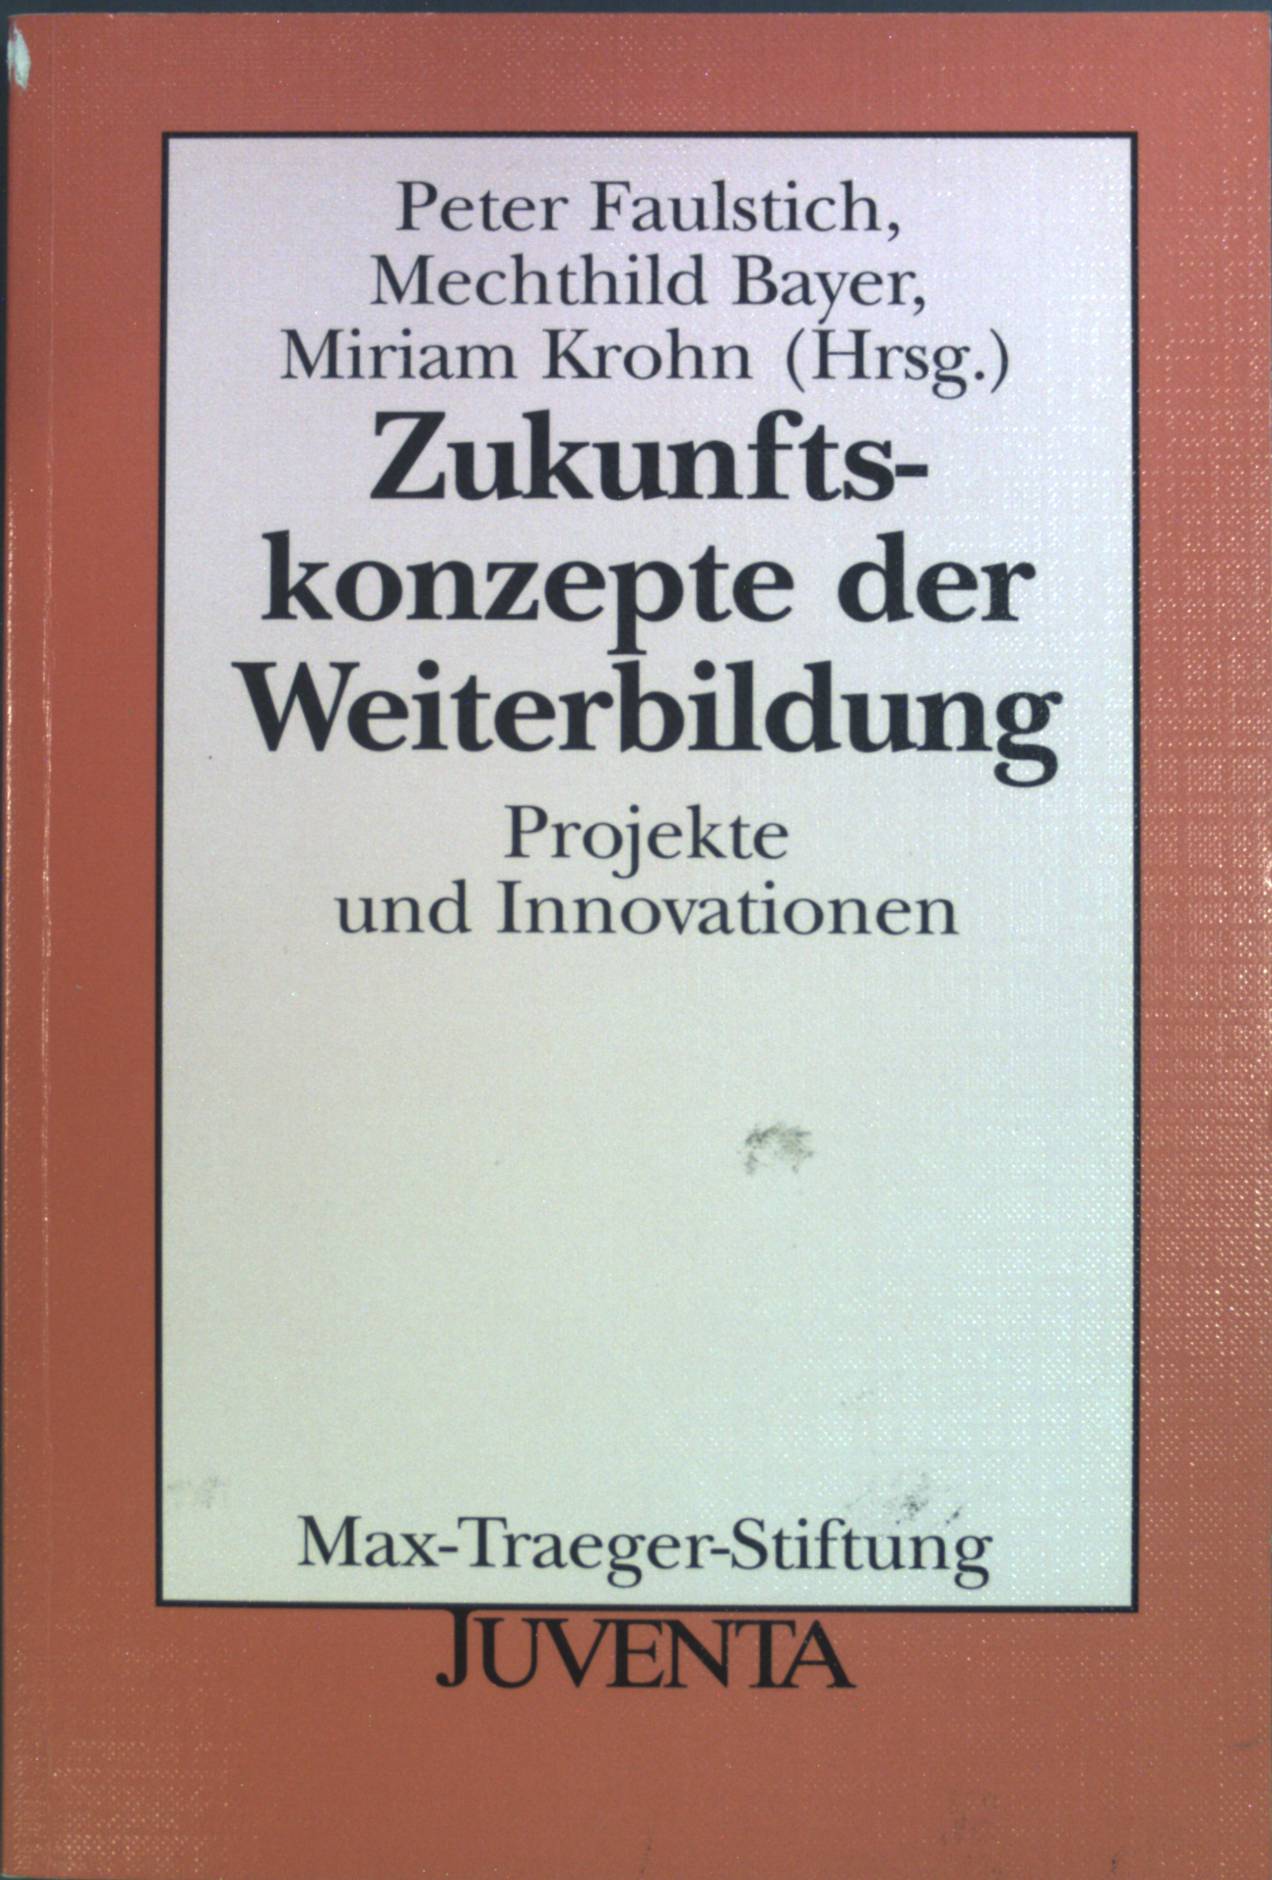 Zukunftskonzepte der Weiterbildung : Projekte und Innovationen. Veröffentlichungen der Max-Traeger-Stiftung ; Bd. 27 - Faulstich, Peter